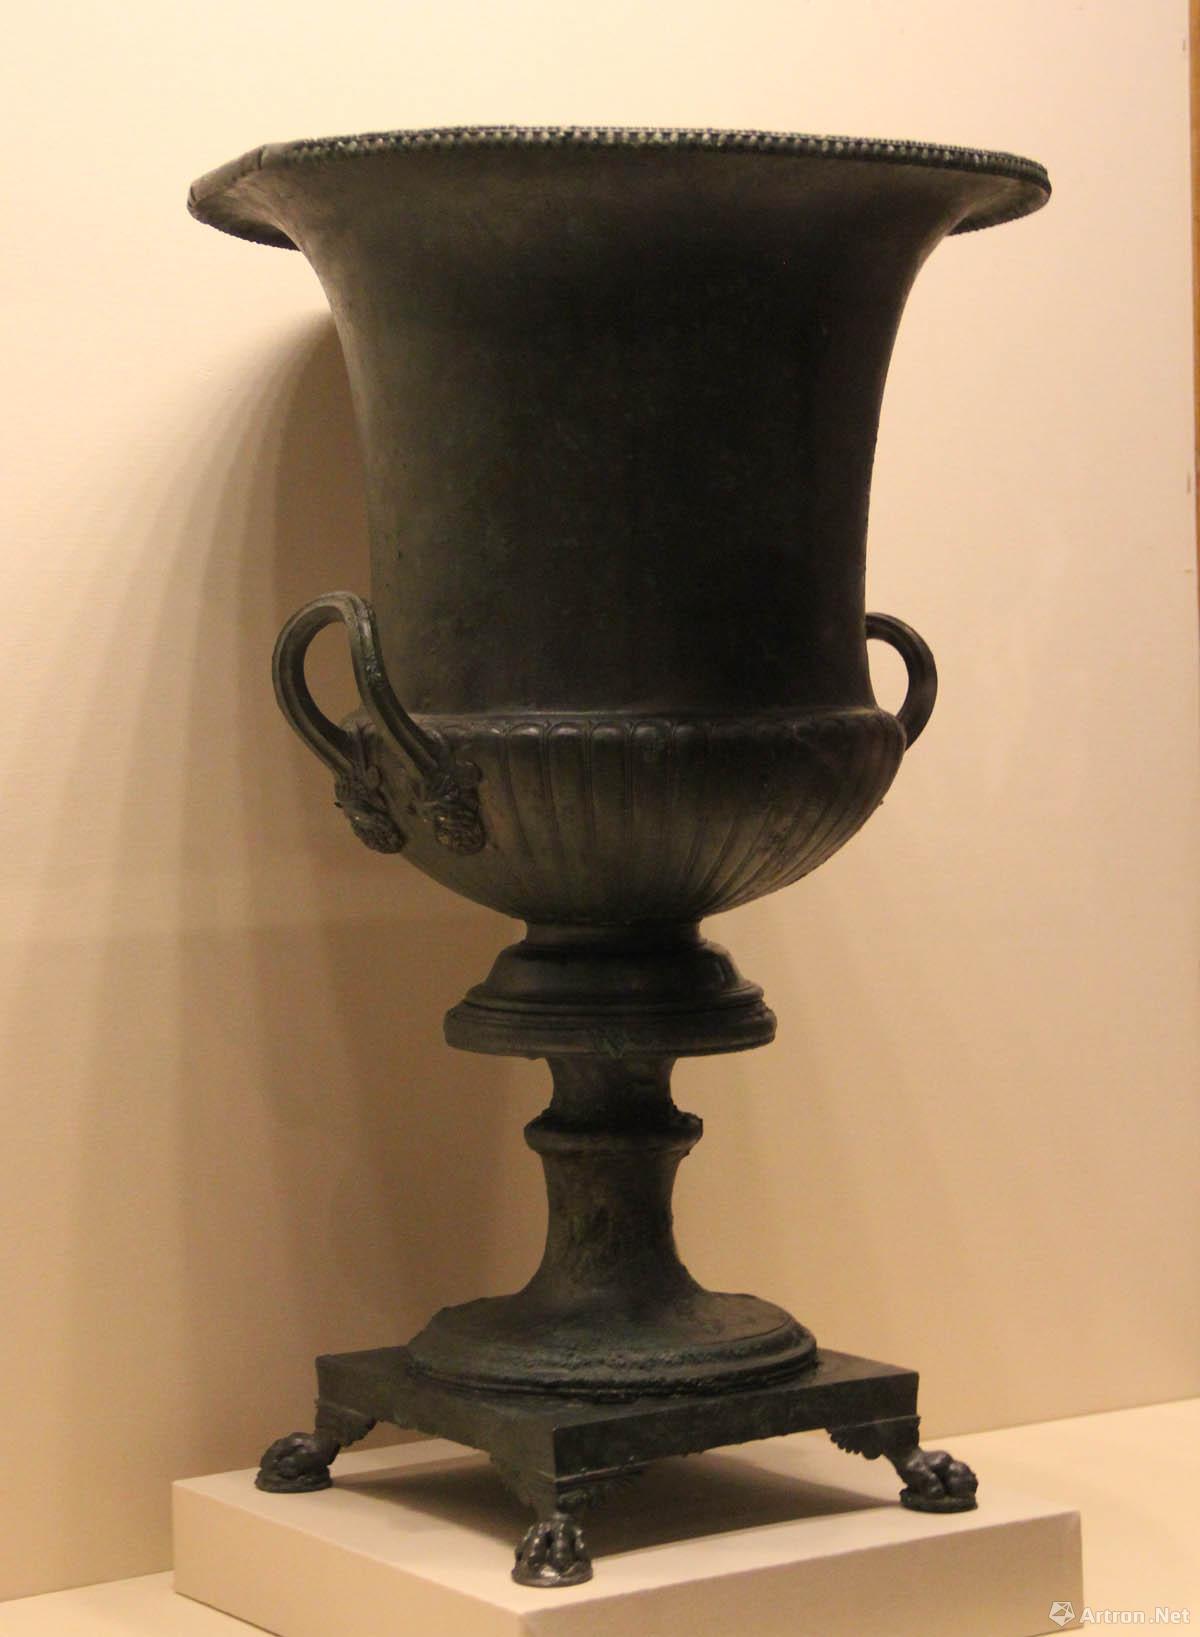 古罗马青铜容器  公元前1世纪-公元1世纪  高60.5cm  意大利那不勒斯国家考古博物馆藏